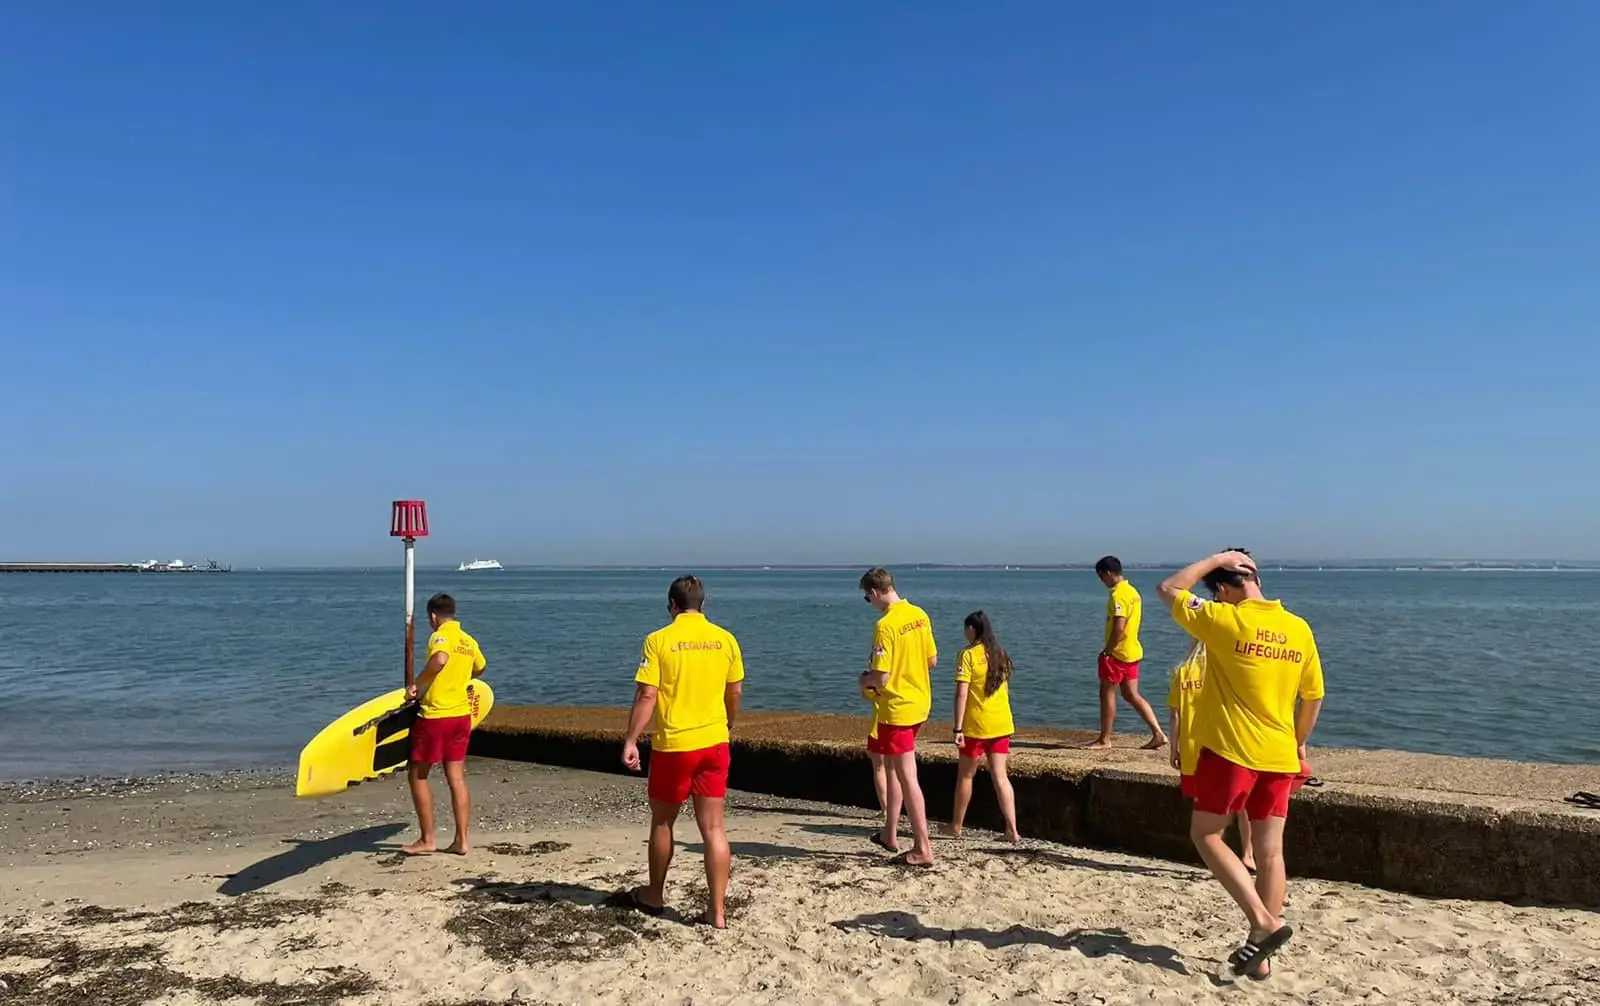 Ryde beach lifeguards